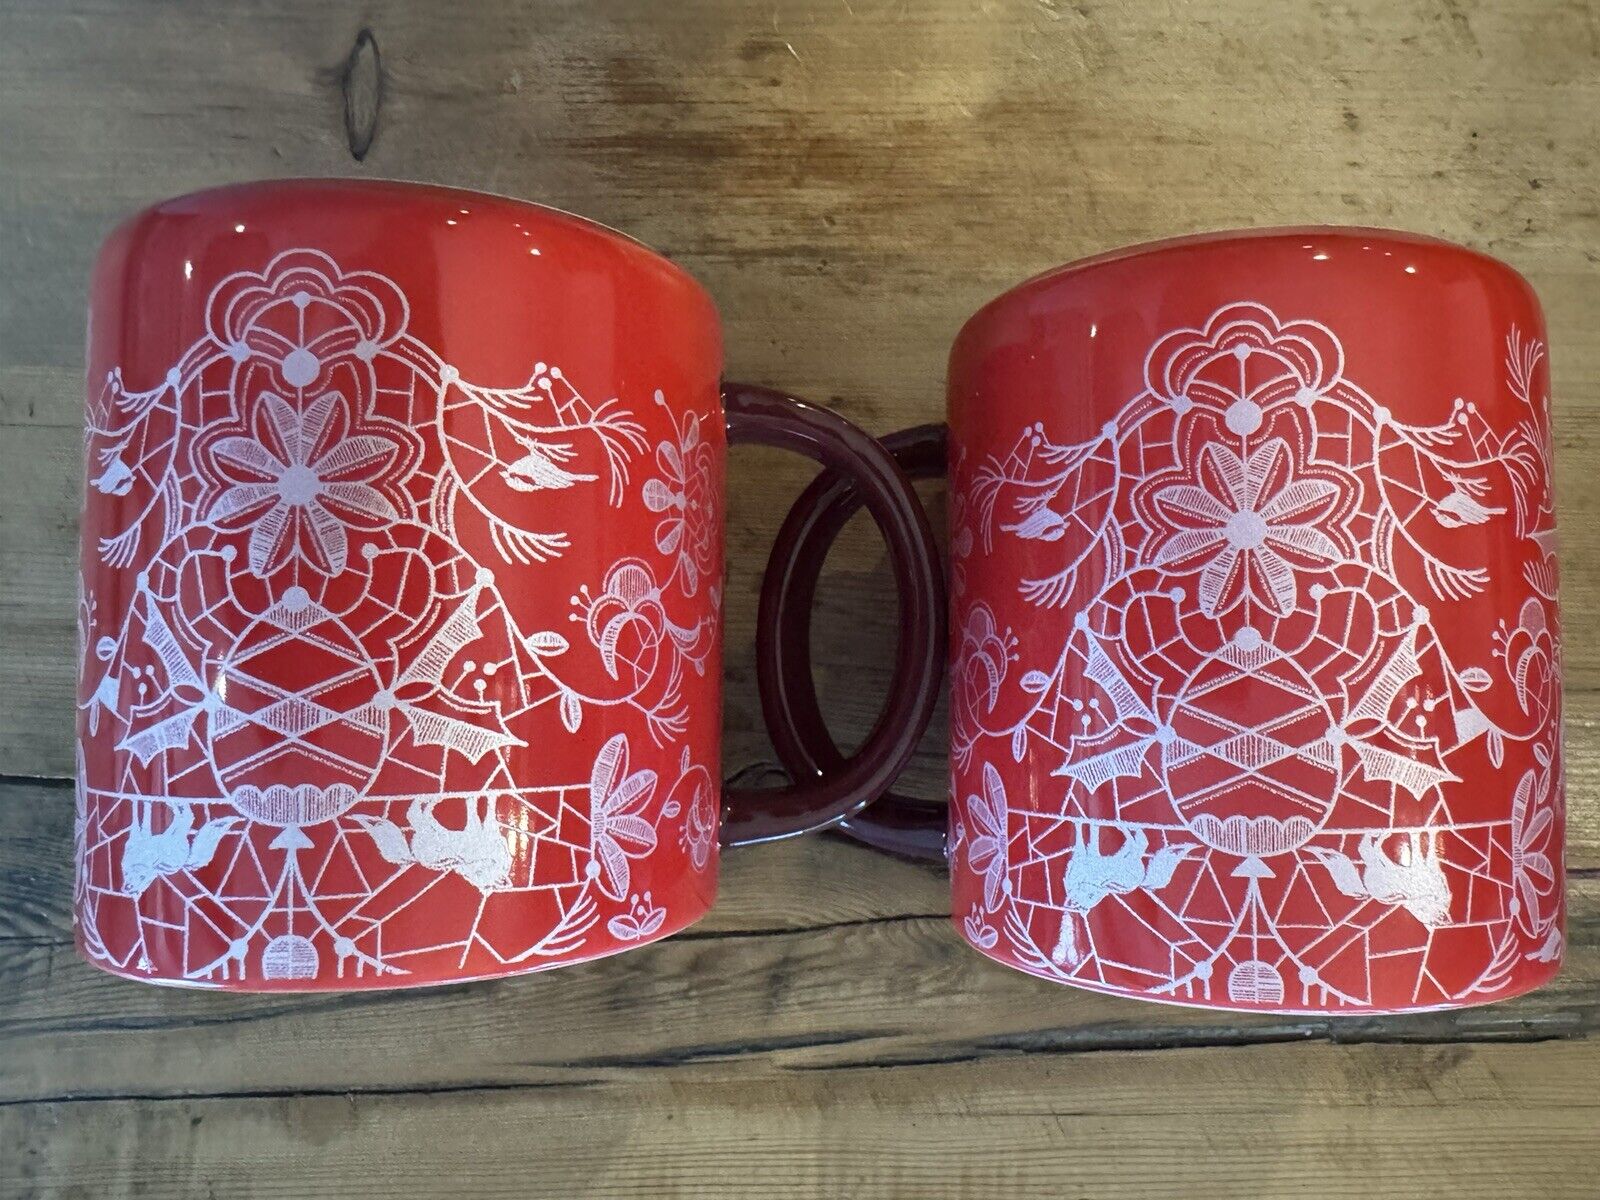 2 Starbucks Woodland Lace Red & Pink Ceramic Mug Foxes Deer NIB